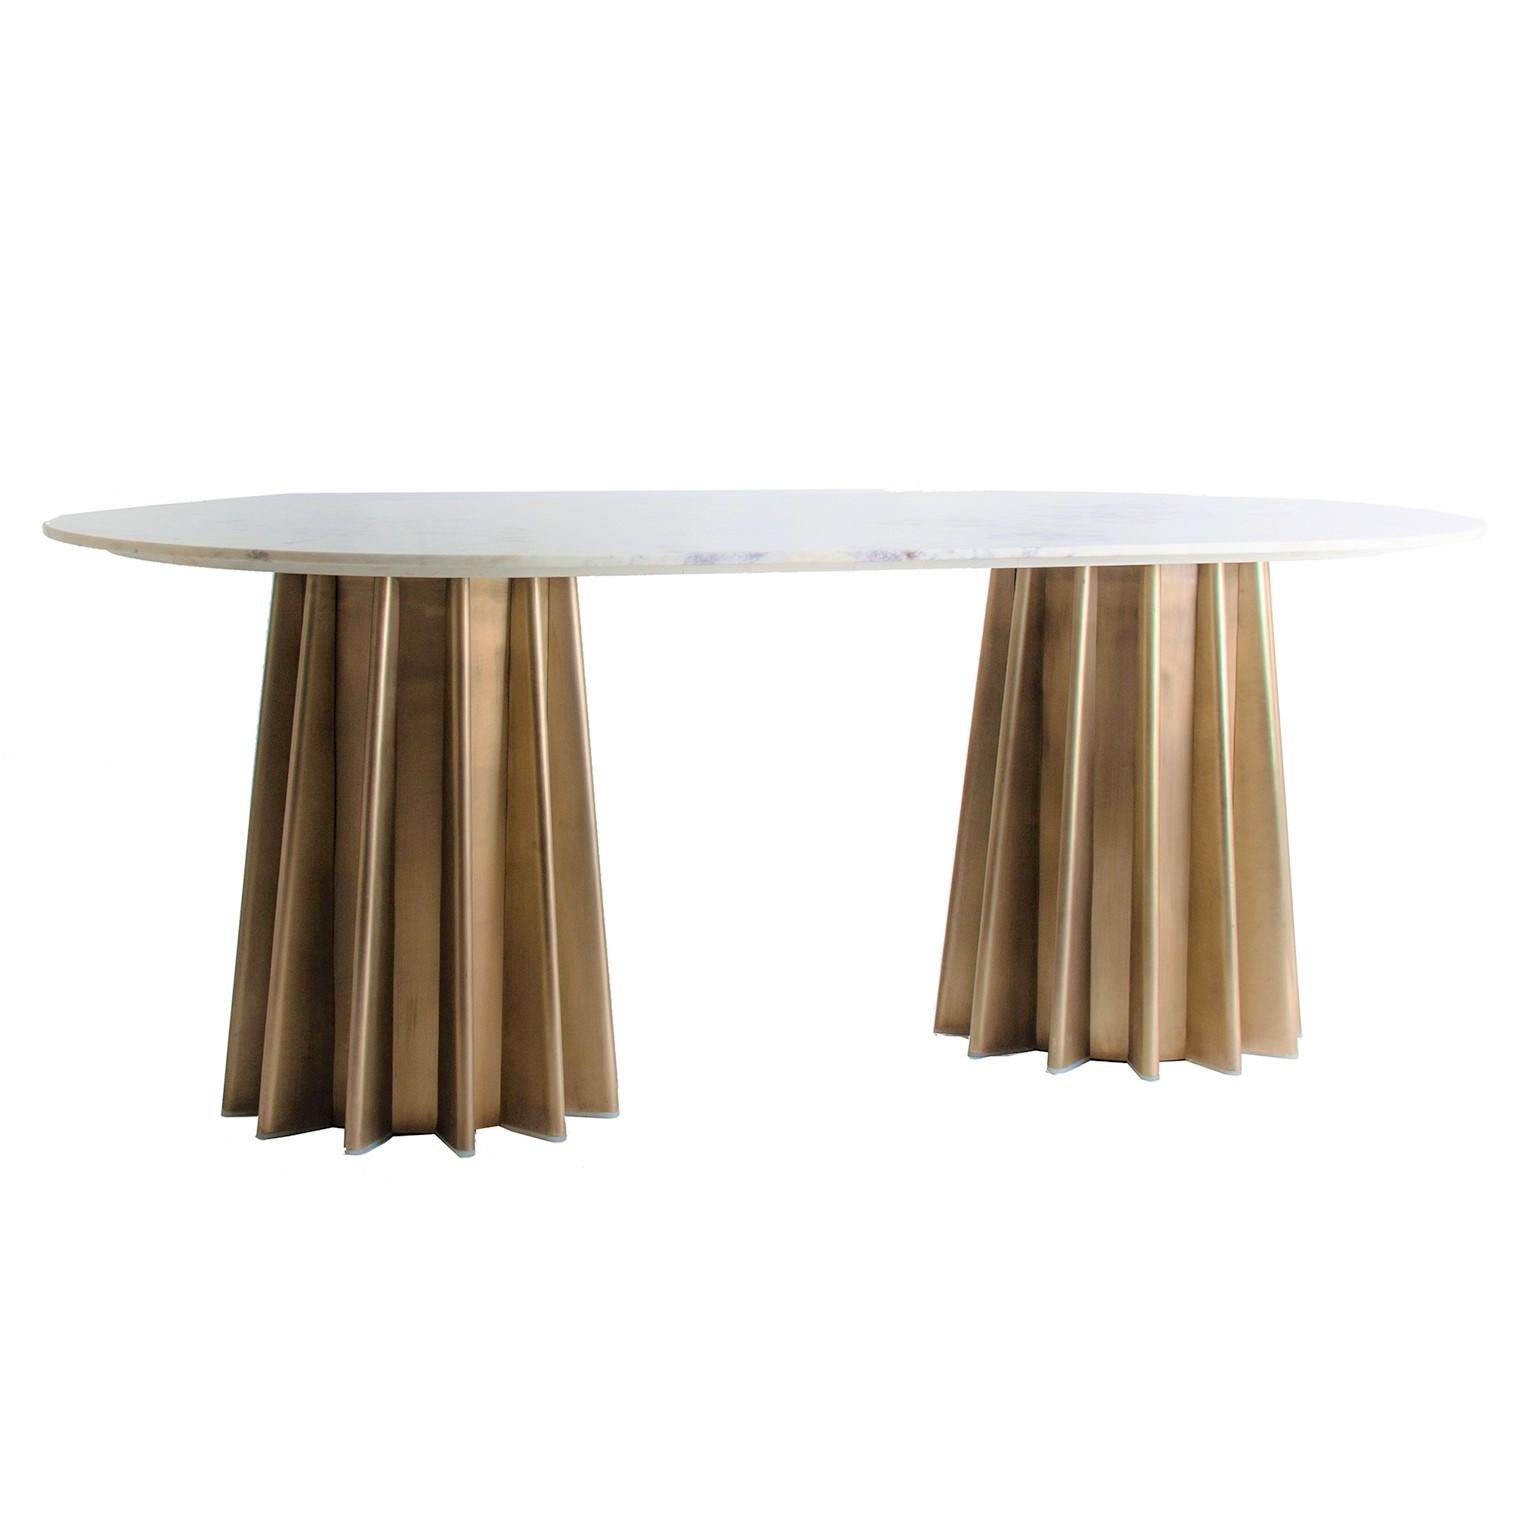 Ovaler Esstisch im italienischen Designstil, bestehend aus einem grafischen, vergoldeten Metallfuß und einer ovalen, weißen Marmorplatte.